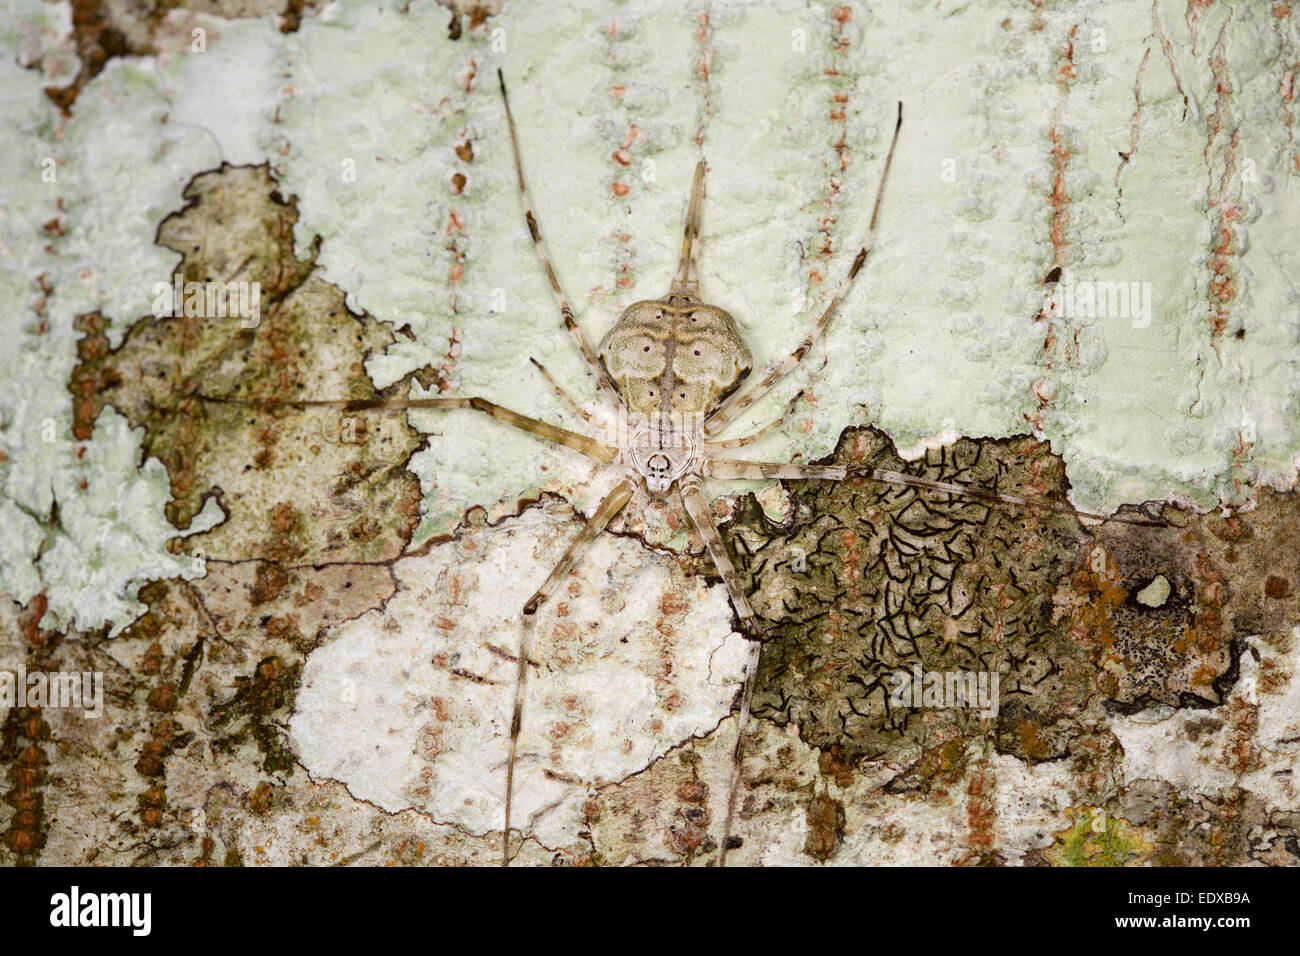 L'Hersilia (ou Long-spinnered les araignées de l'écorce) sont un genre d'araignées dans le tronc de l'arbre de famille Hersiliidae. Ils sont parfois kn Banque D'Images